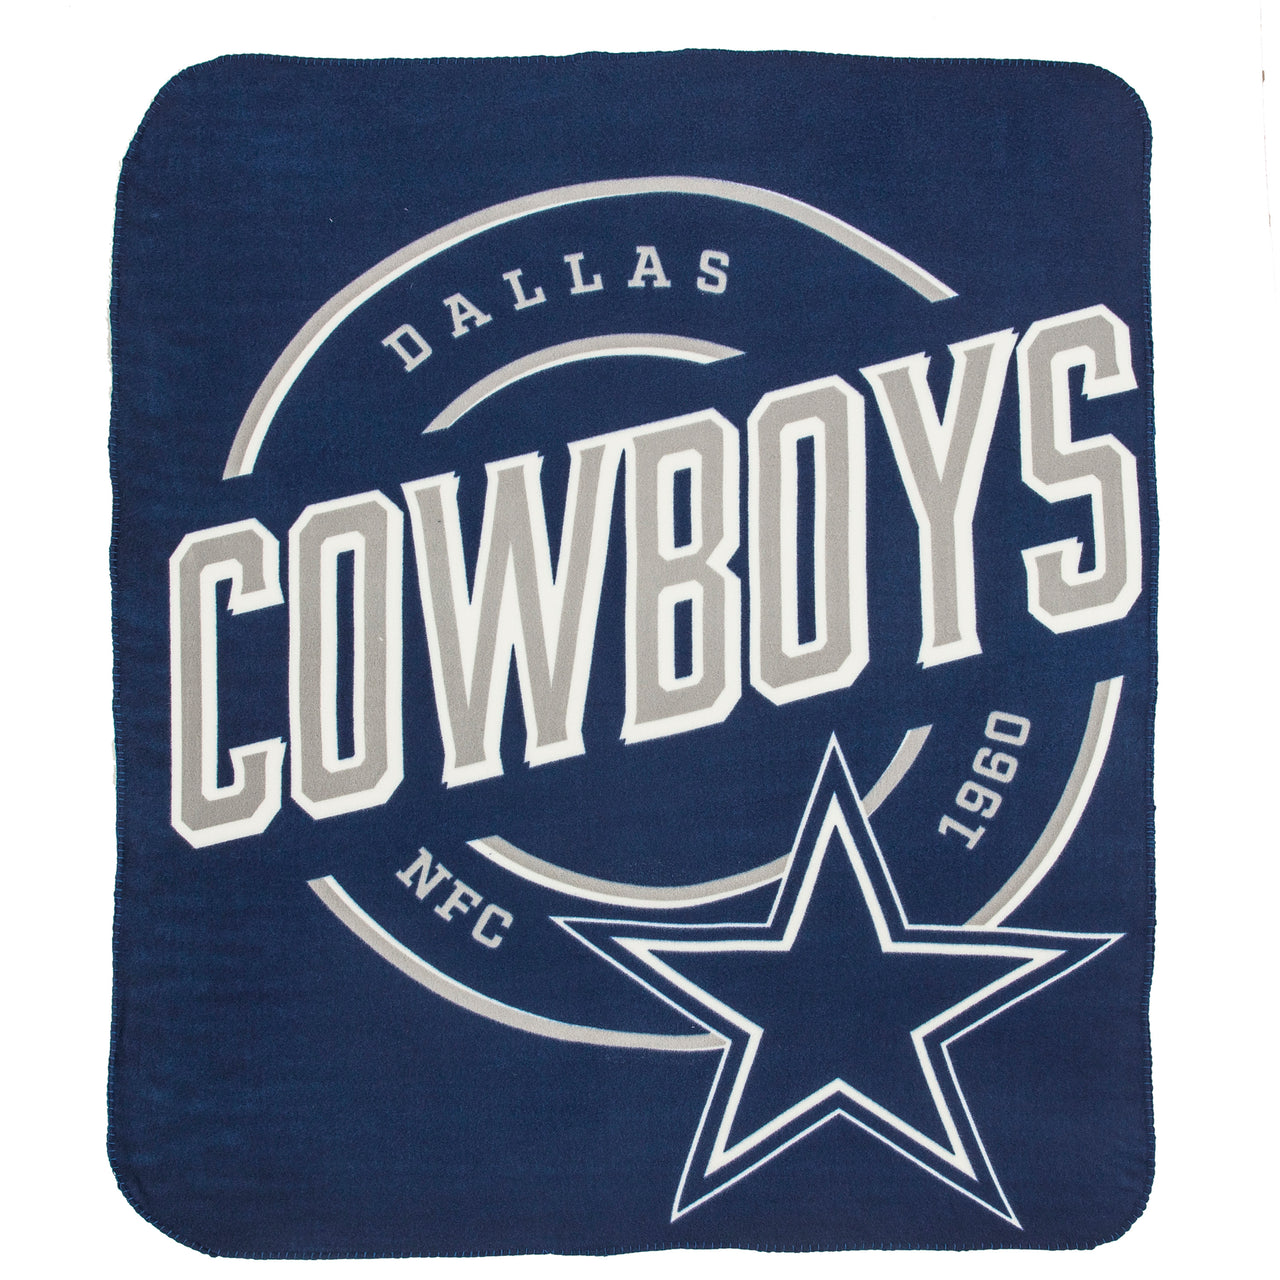 https://www.shopdynastysports.com/cdn/shop/products/CowboysCampaignFleeceBlanket.jpg?v=1633482453&width=1280